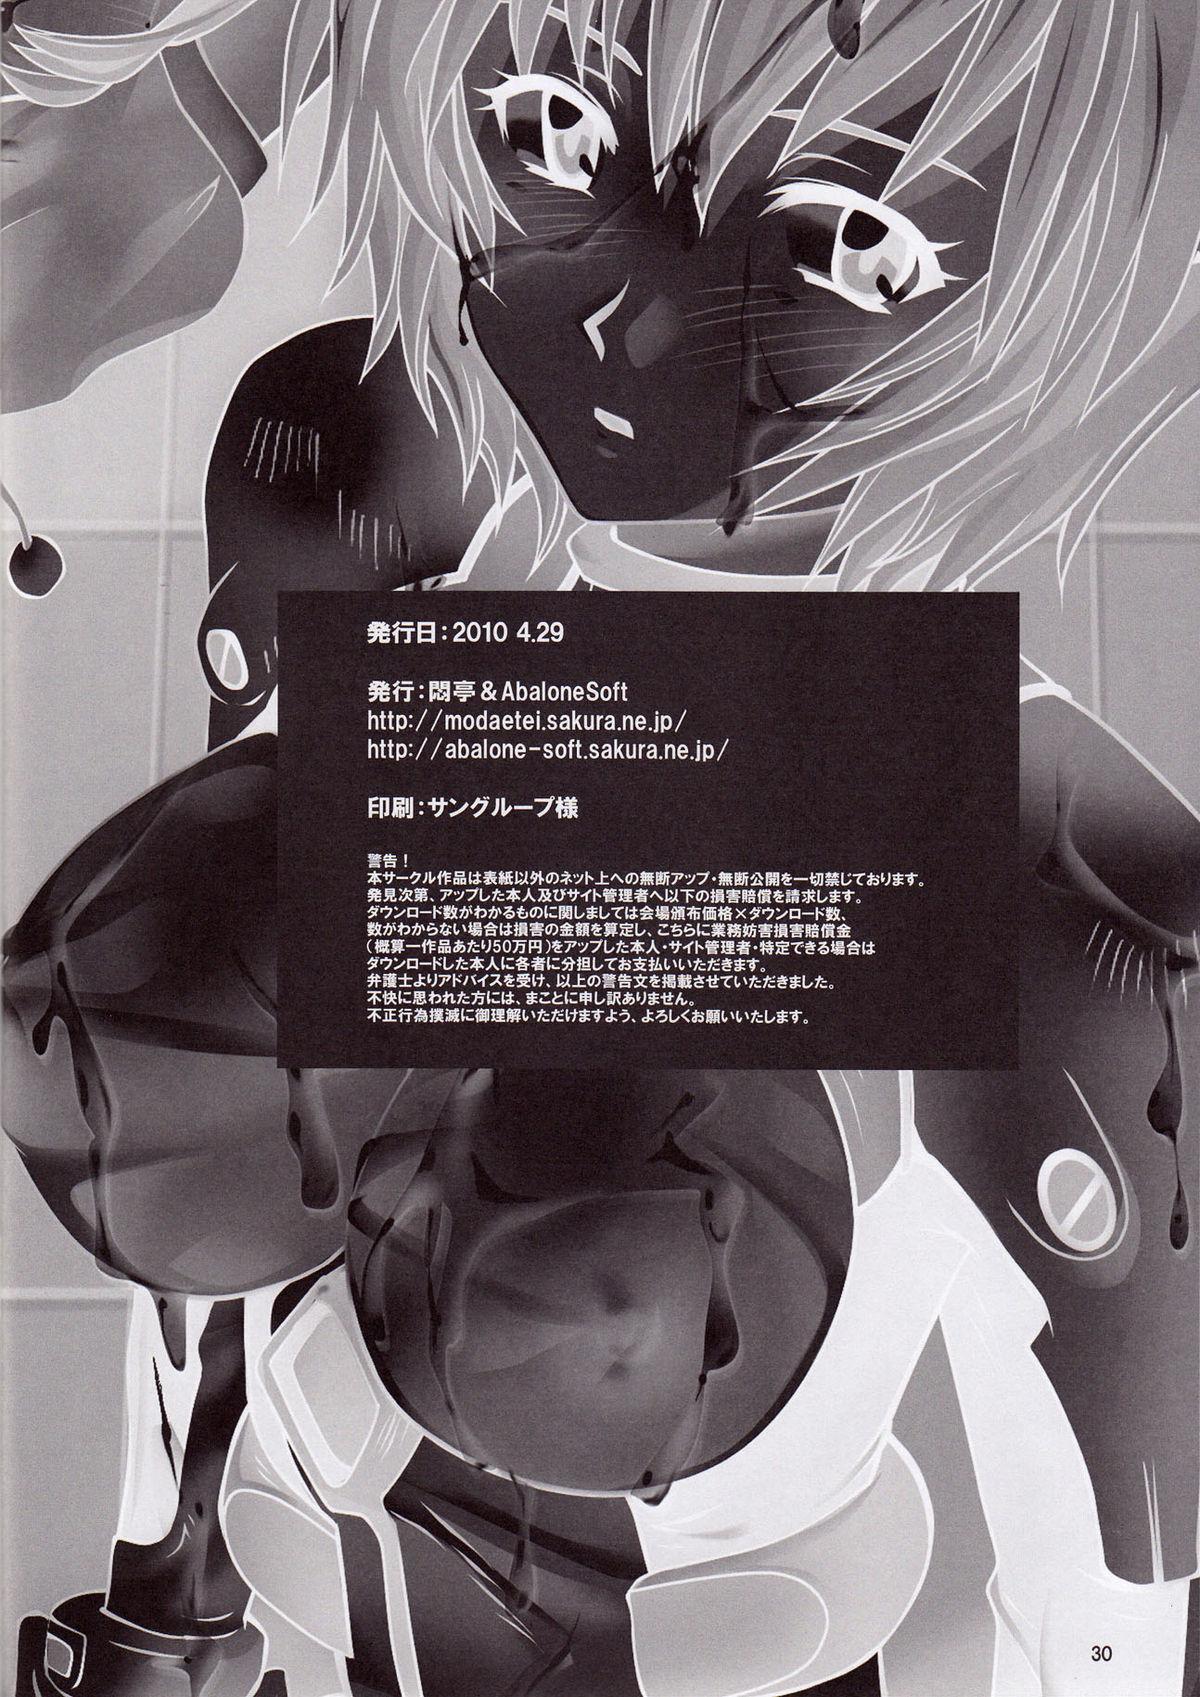 Man Ayanami Santai - Akagi Hakase no Kaizou Ningyou Settai - Neon genesis evangelion Sloppy Blowjob - Page 30